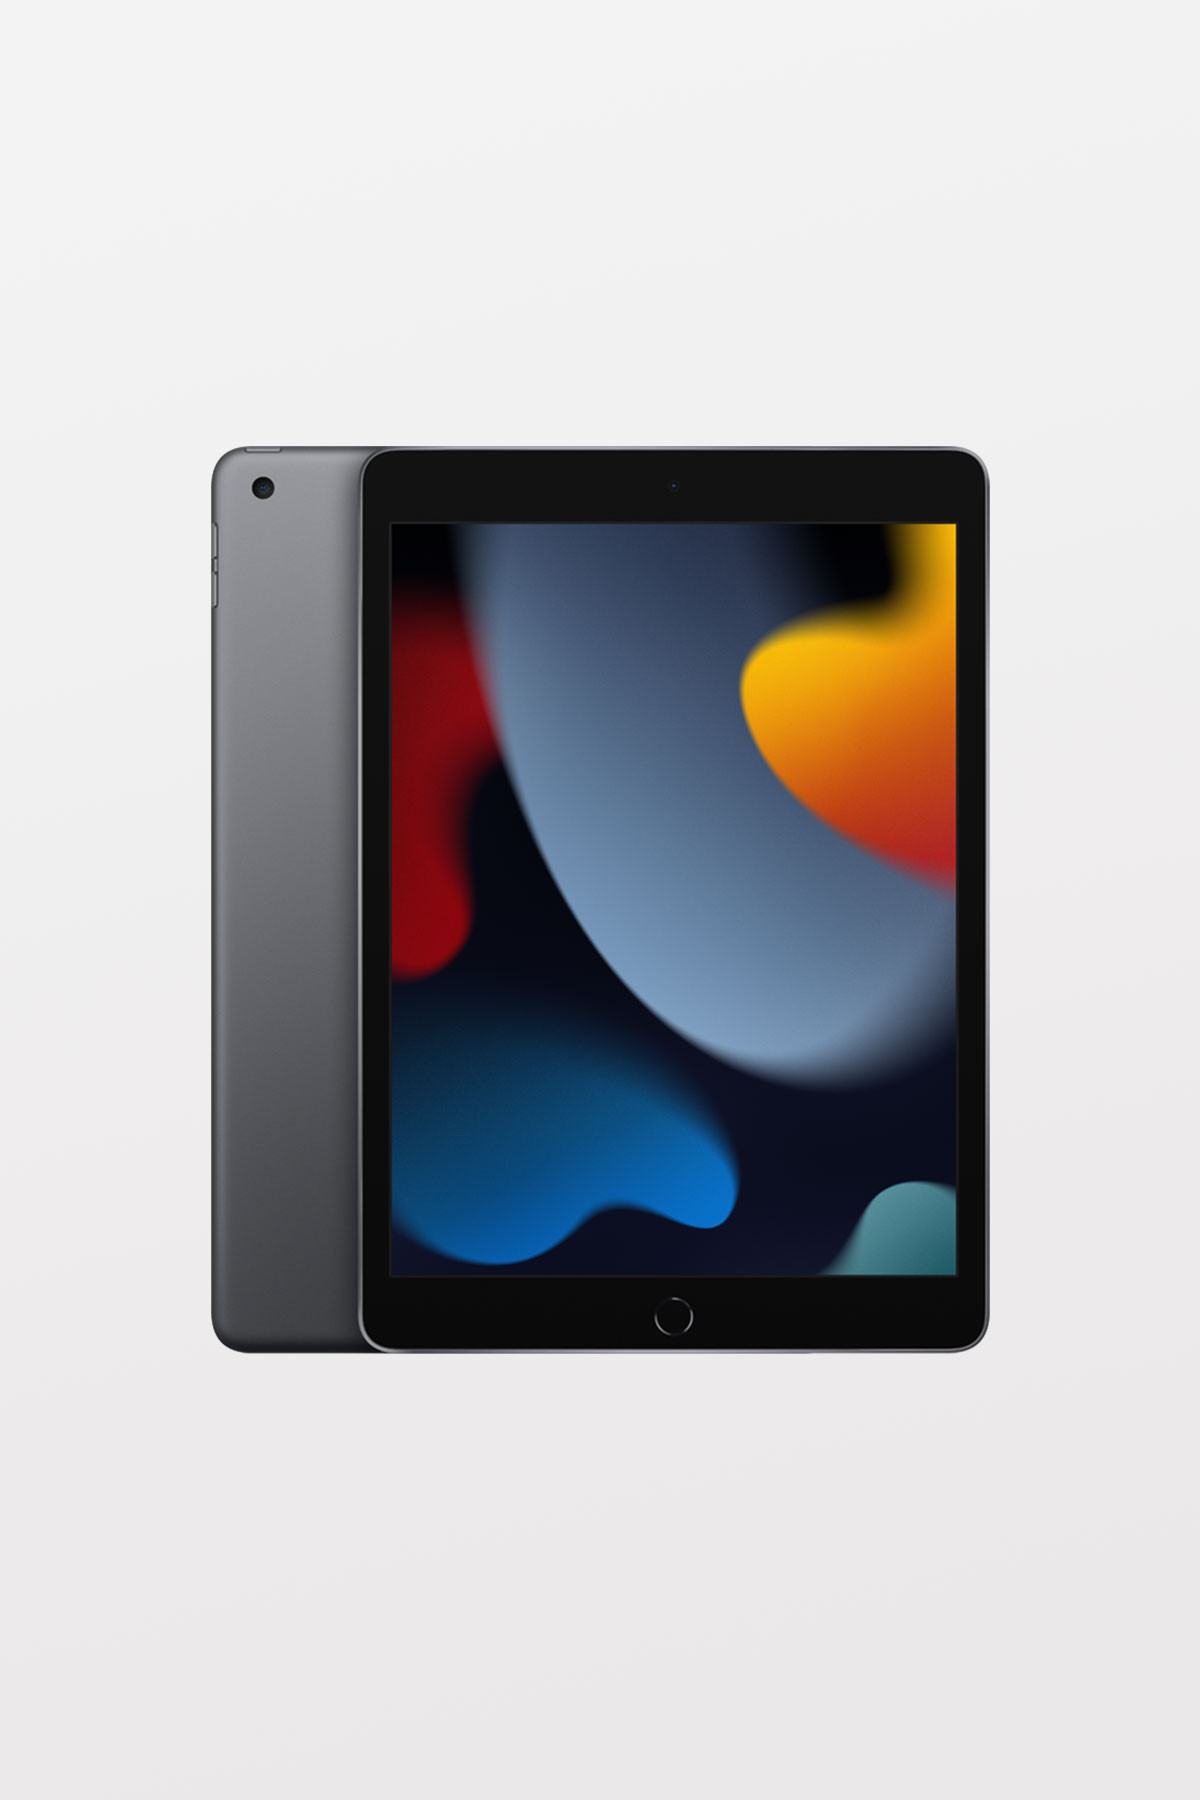 iPad (9th Gen) 10.2-inch Wi-Fi + Cellular 256GB — Space Grey